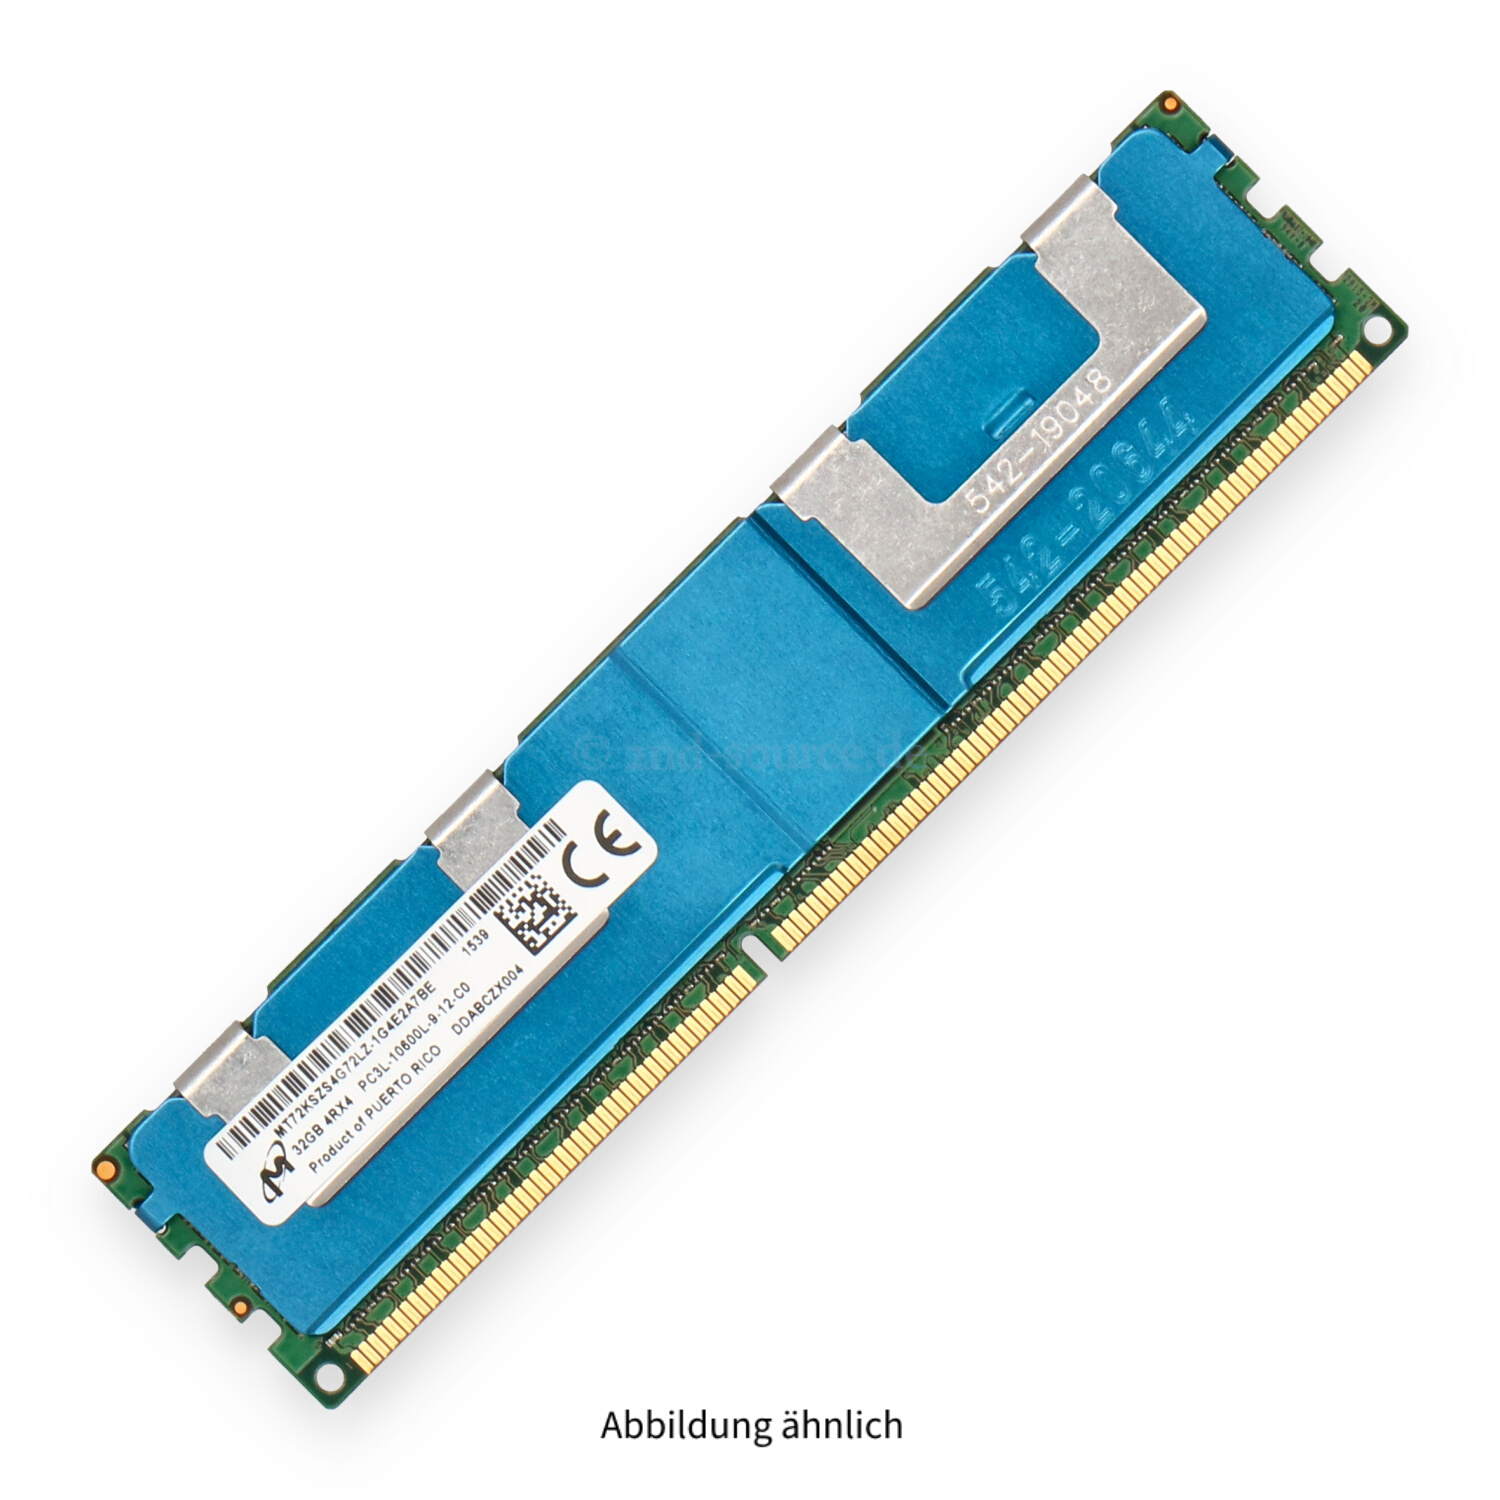 HPE 32GB PC3L-10600L DIMM Quad Rank x4 (DDR3-1333) Registered ECC 782408-001 2660-0394